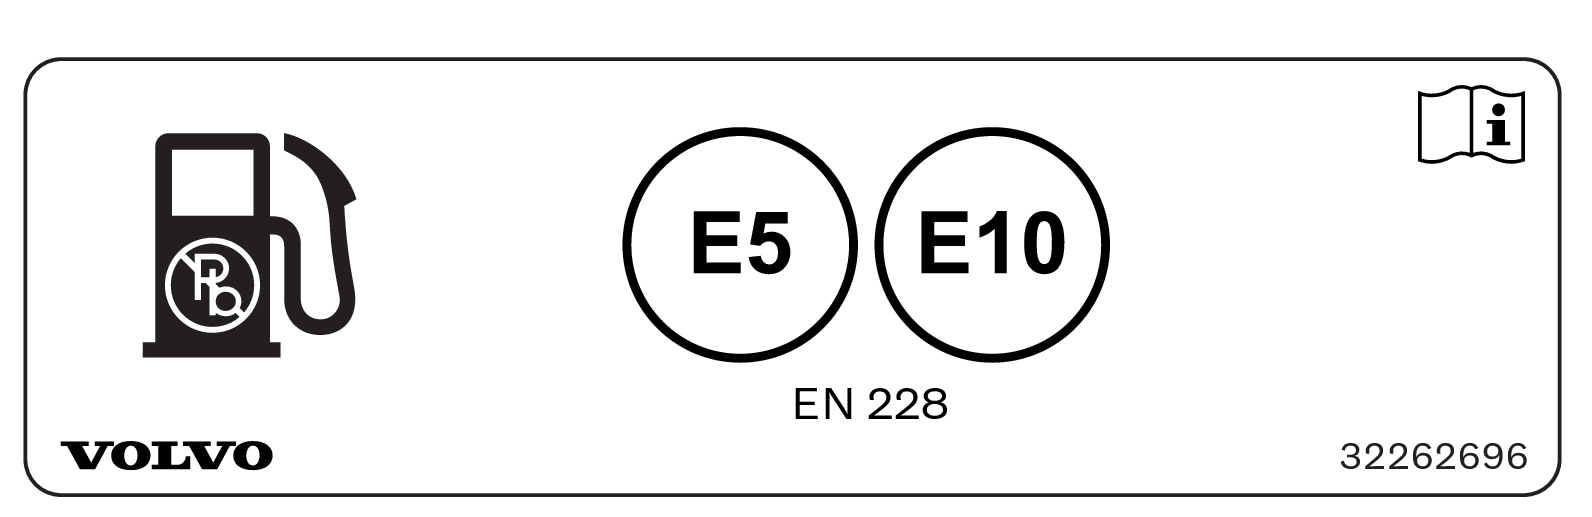 SuSi - 19w11 - Fuel label - Decal-etanol-petrol